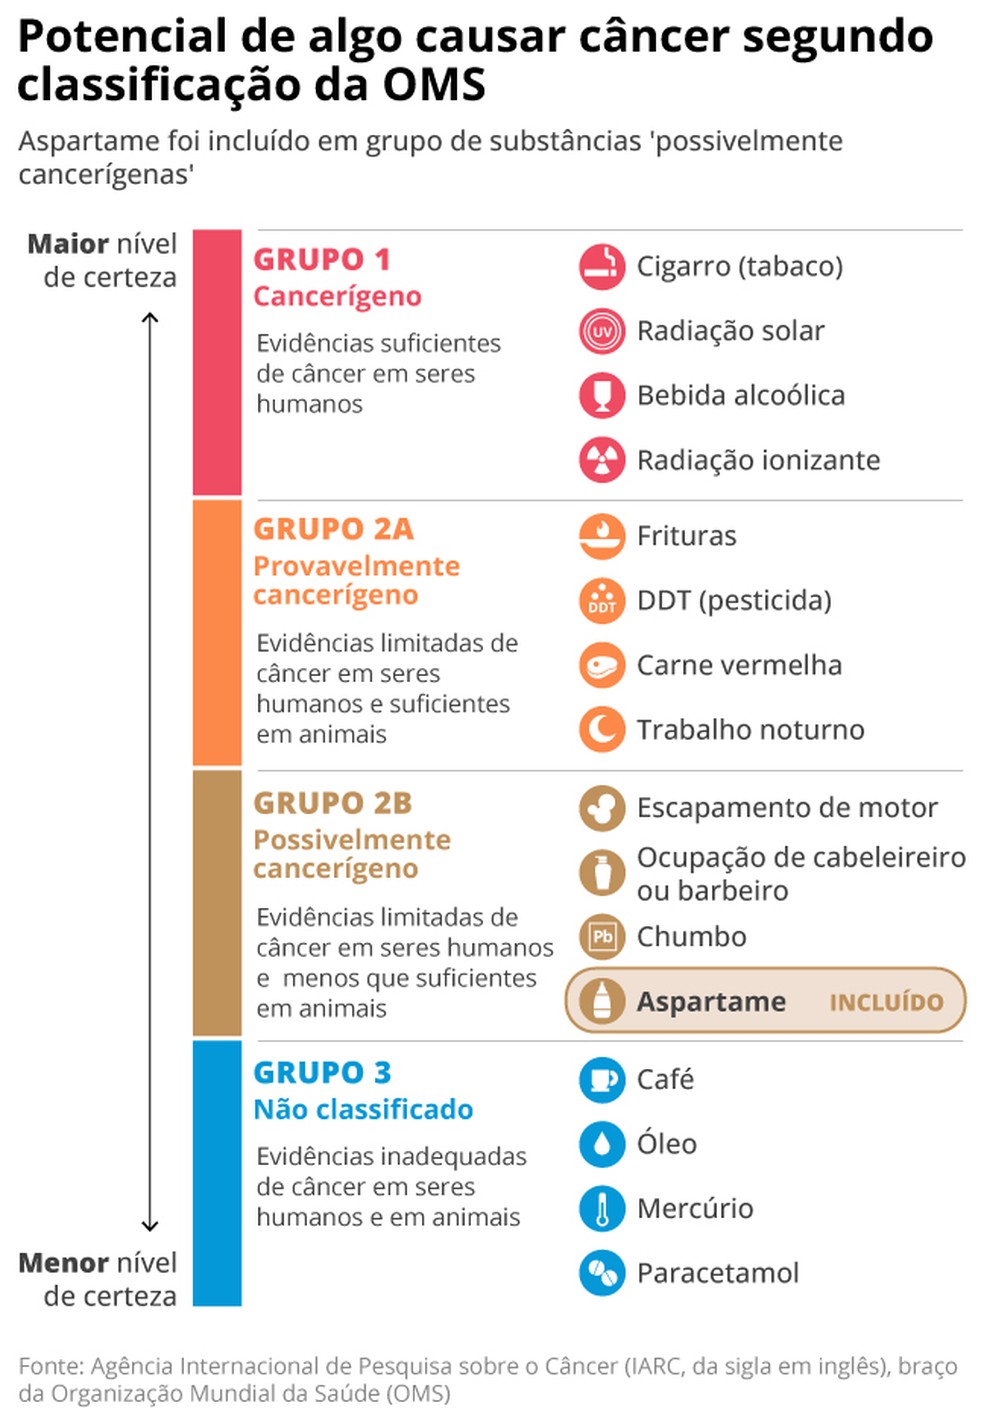 Classificação de agentes em relação ao potencial de causar câncer segundo a OMS; aspartame foi considerado 'possivelmente cancerígeno'. — Foto: Arte O GLOBO